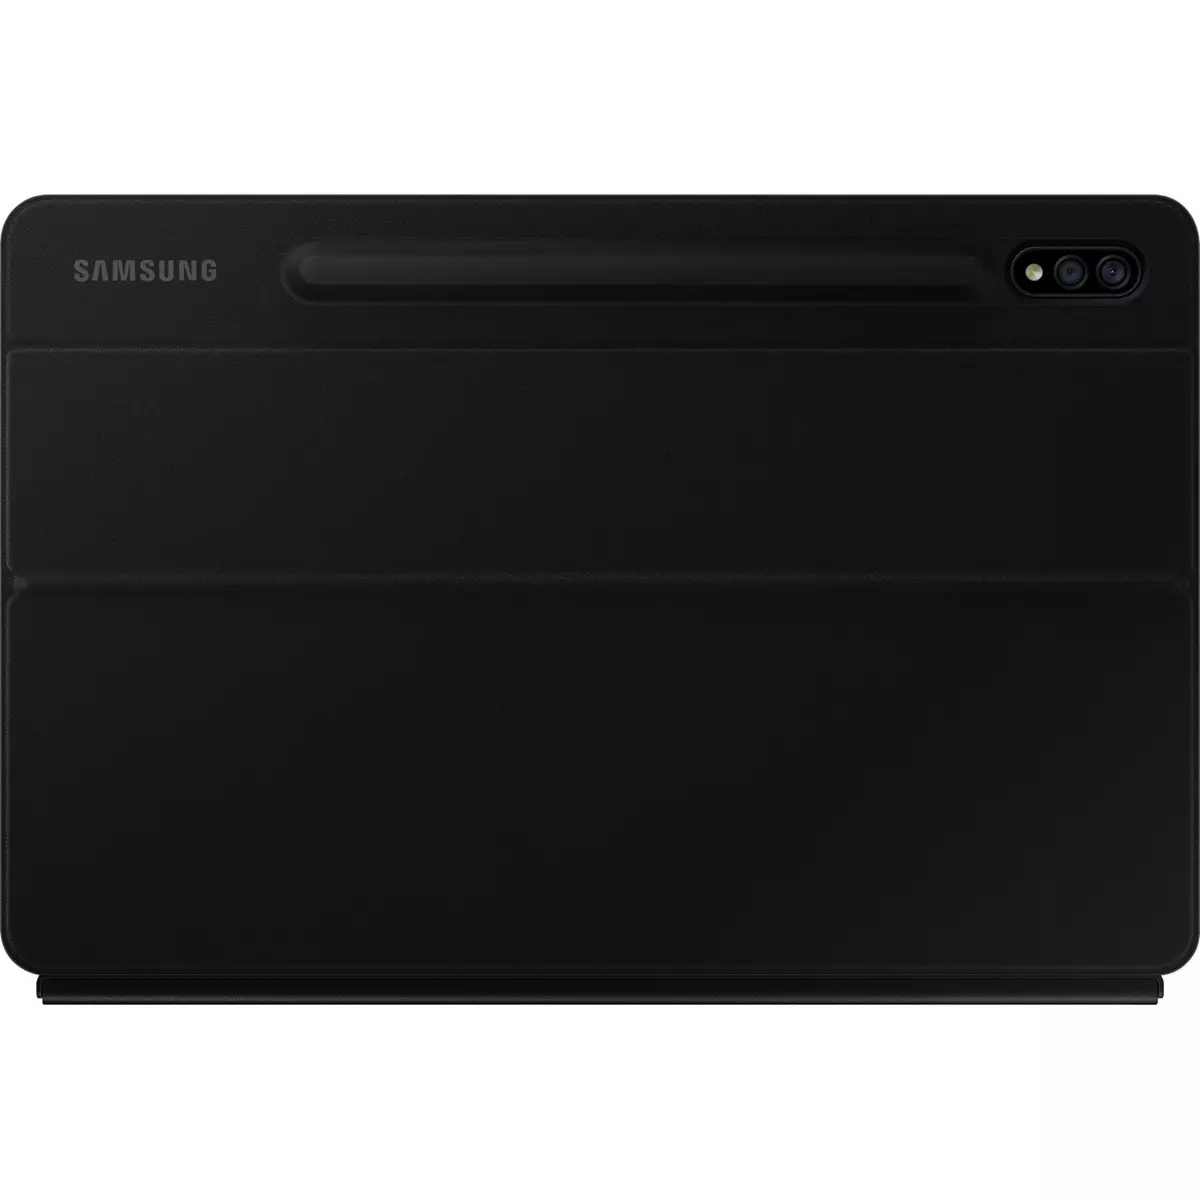 SAMSUNG Protection tablette BKCVR CLAV S7 S8 - Noir